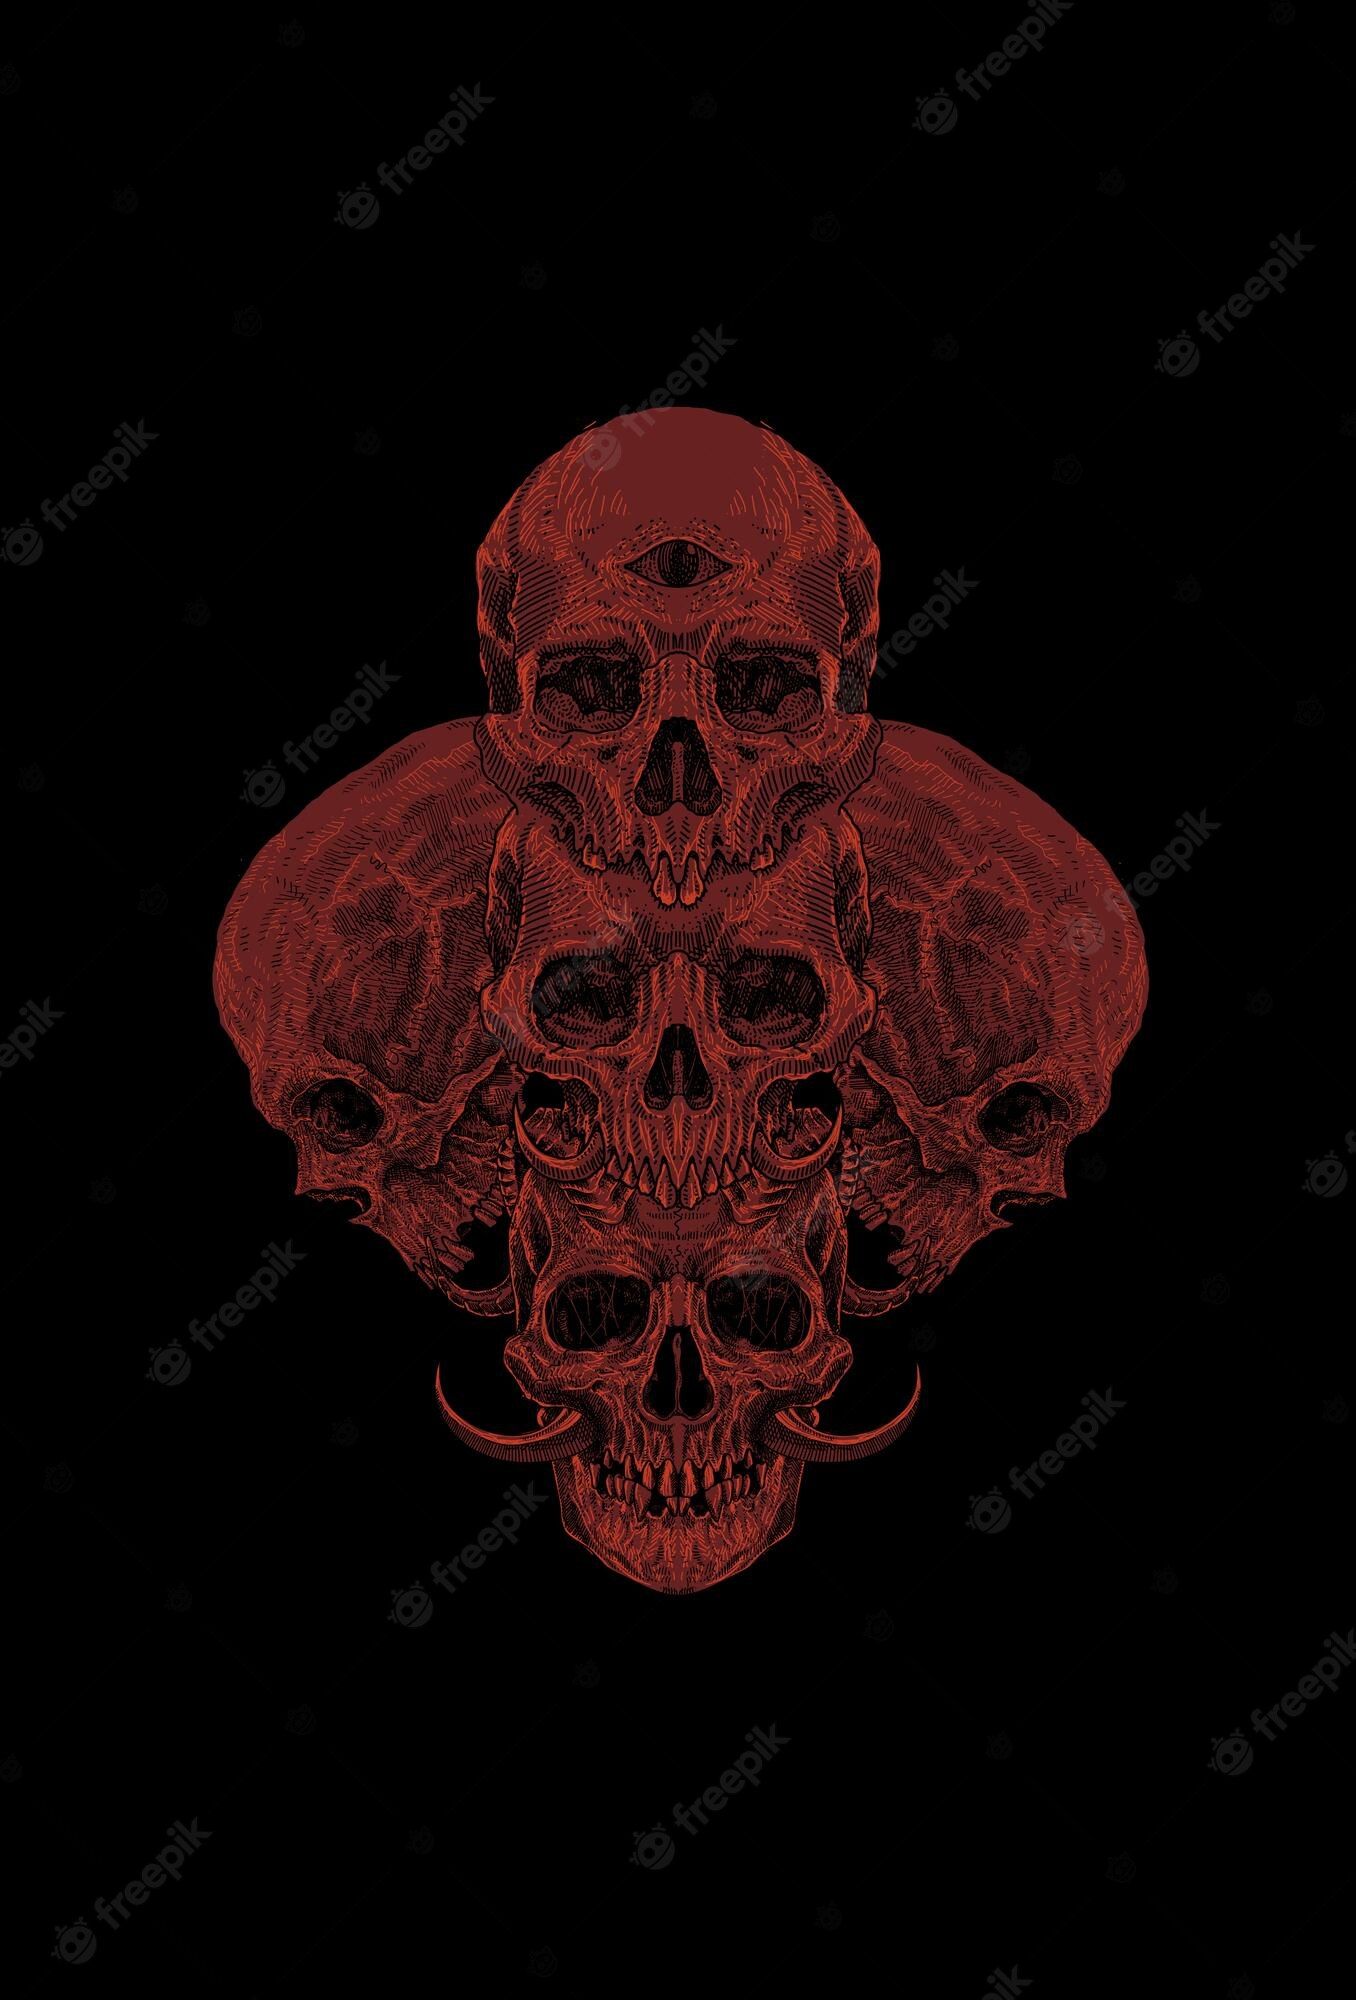 Detailed Skull Image